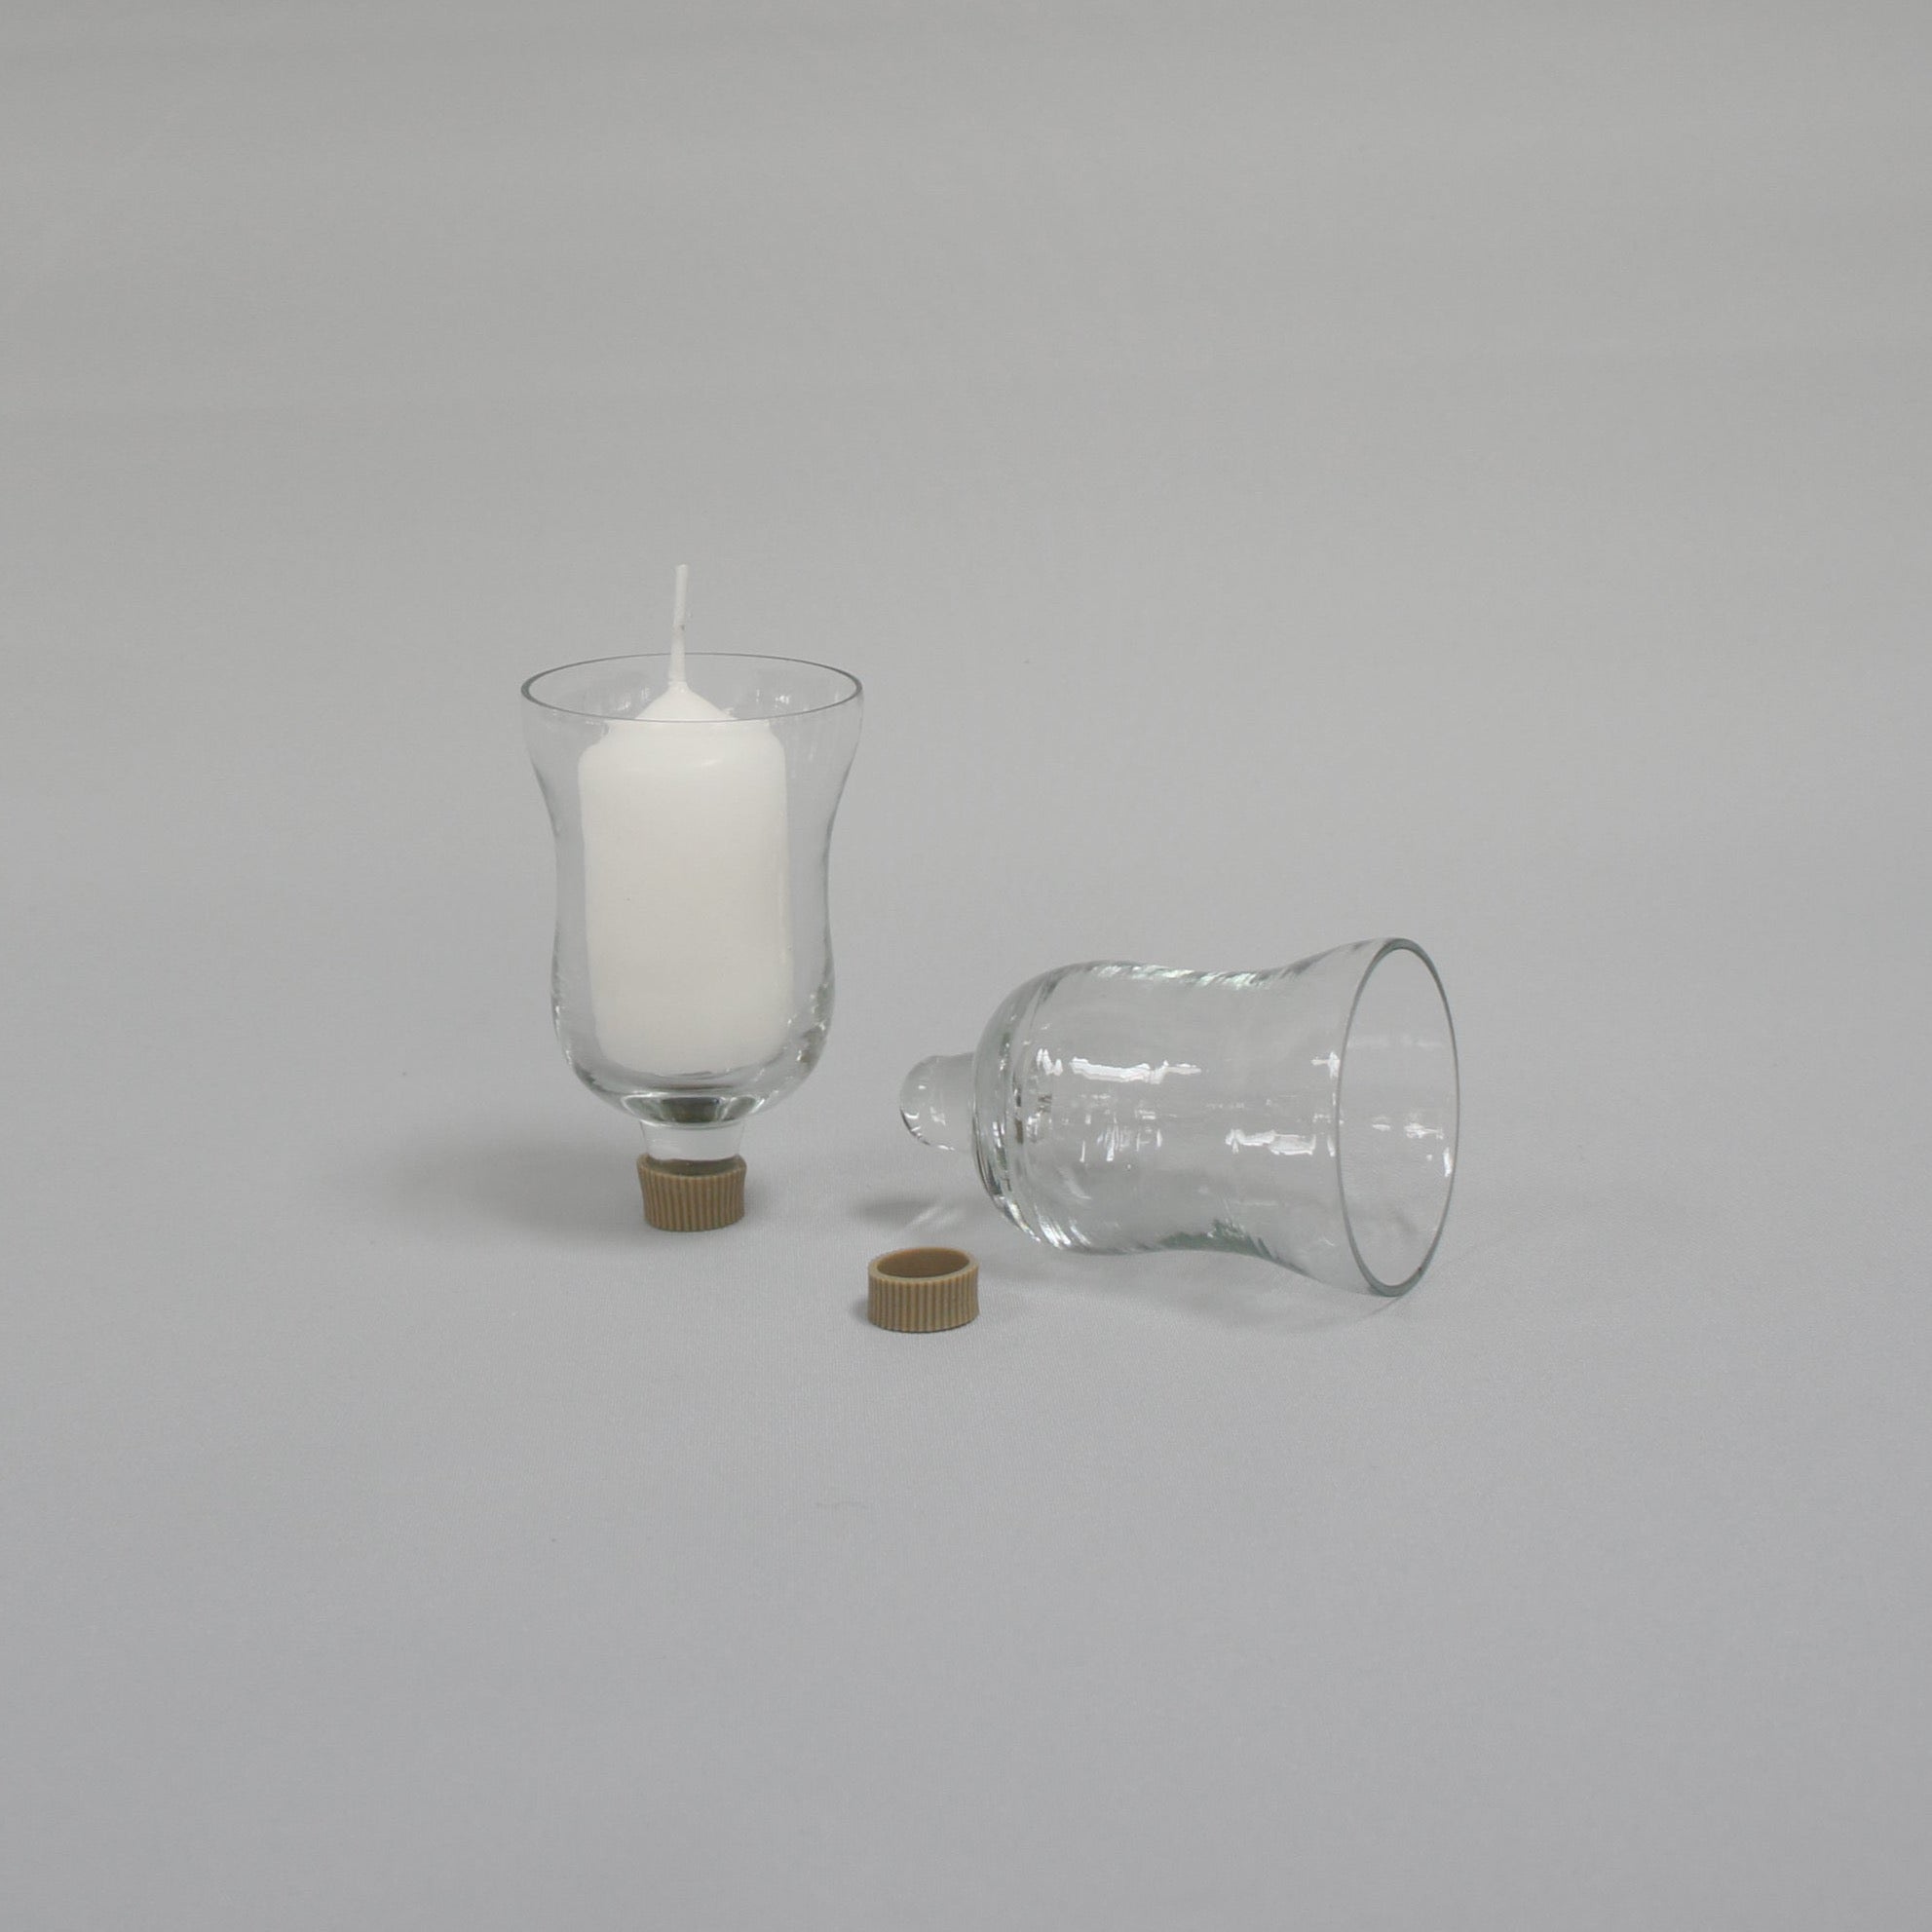 Glasaufsatz für Kerzenständer, 5 Stück im Set, exkl. Kerzen